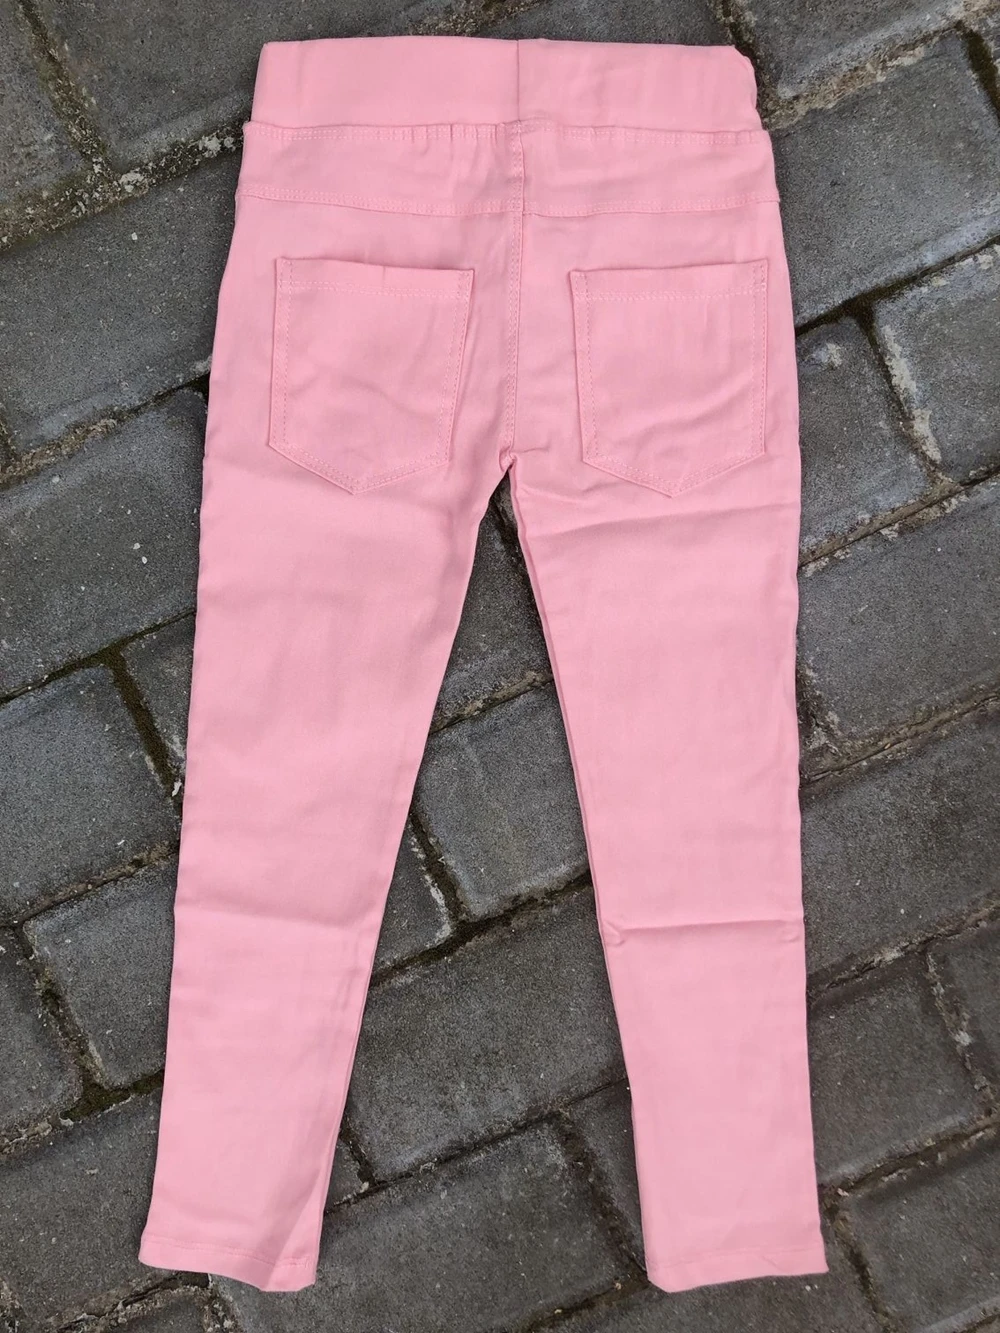 Новые яркие однотонные леггинсы для девочек джеггинсы, штаны детские джинсовые леггинсы с карманами